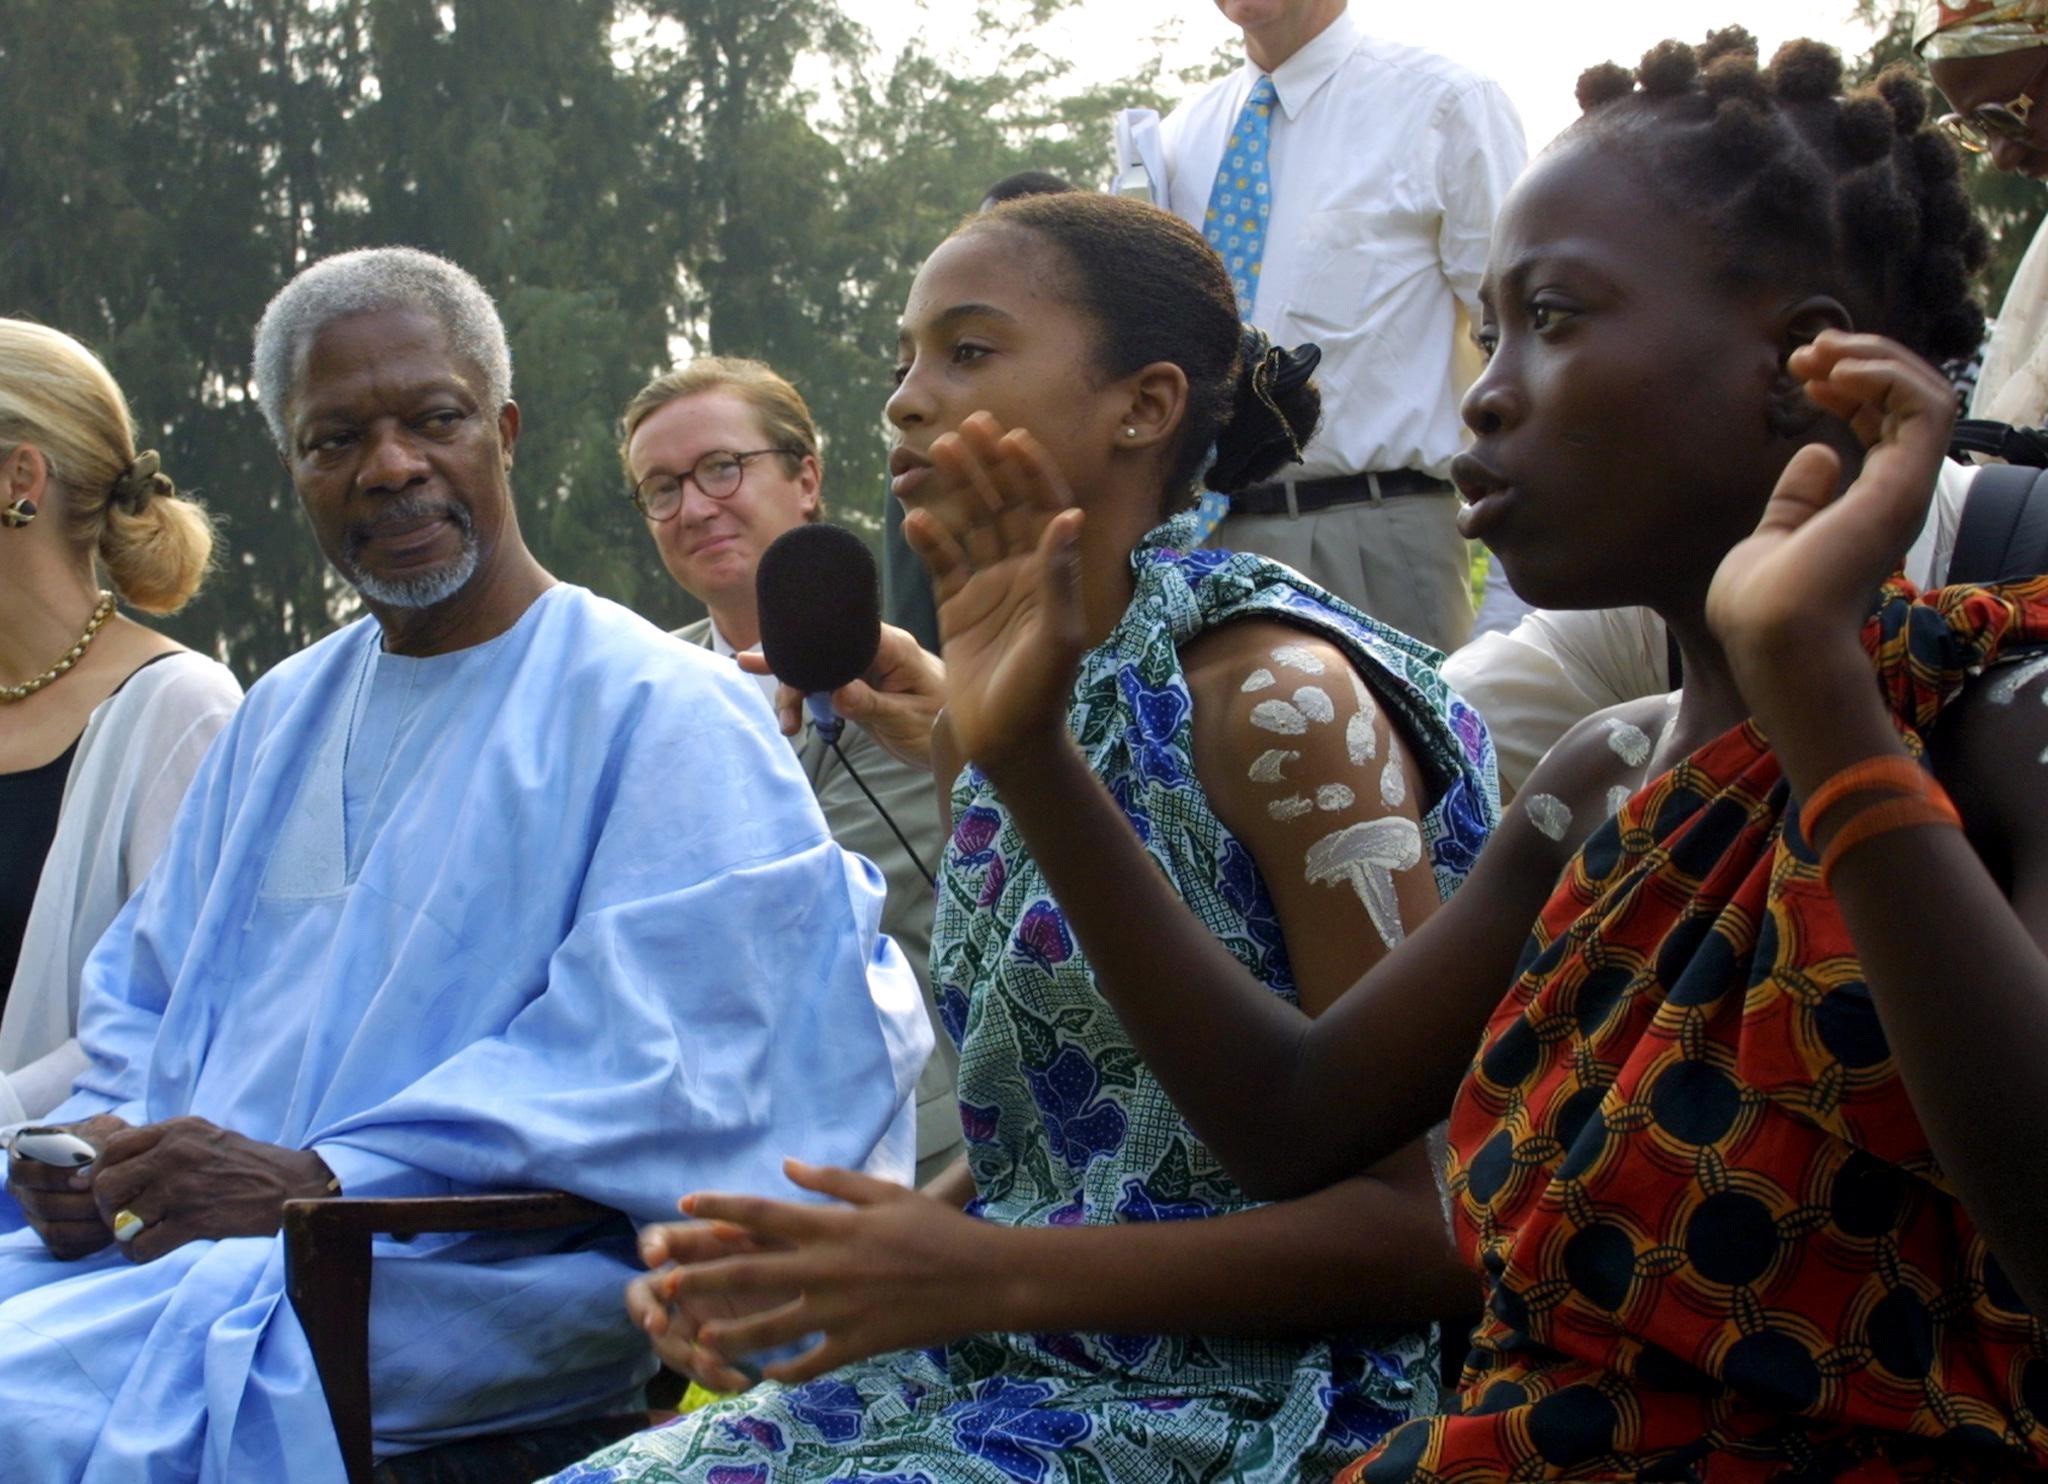 Nhằm cải thiện đời sống người dân trên thế giới, ông Annan đã tích cực kêu gọi các quốc gia phát triển giúp đỡ những nước nghèo hơn, xoá nghèo và bất bình đẳng. Nhờ có ông mà tầng lớp dân nghèo được chú ý nhiều hơn và có được sự chia sẻ sâu sắc của cộng đồng quốc tế. (Ảnh: AFP/TTXVN)